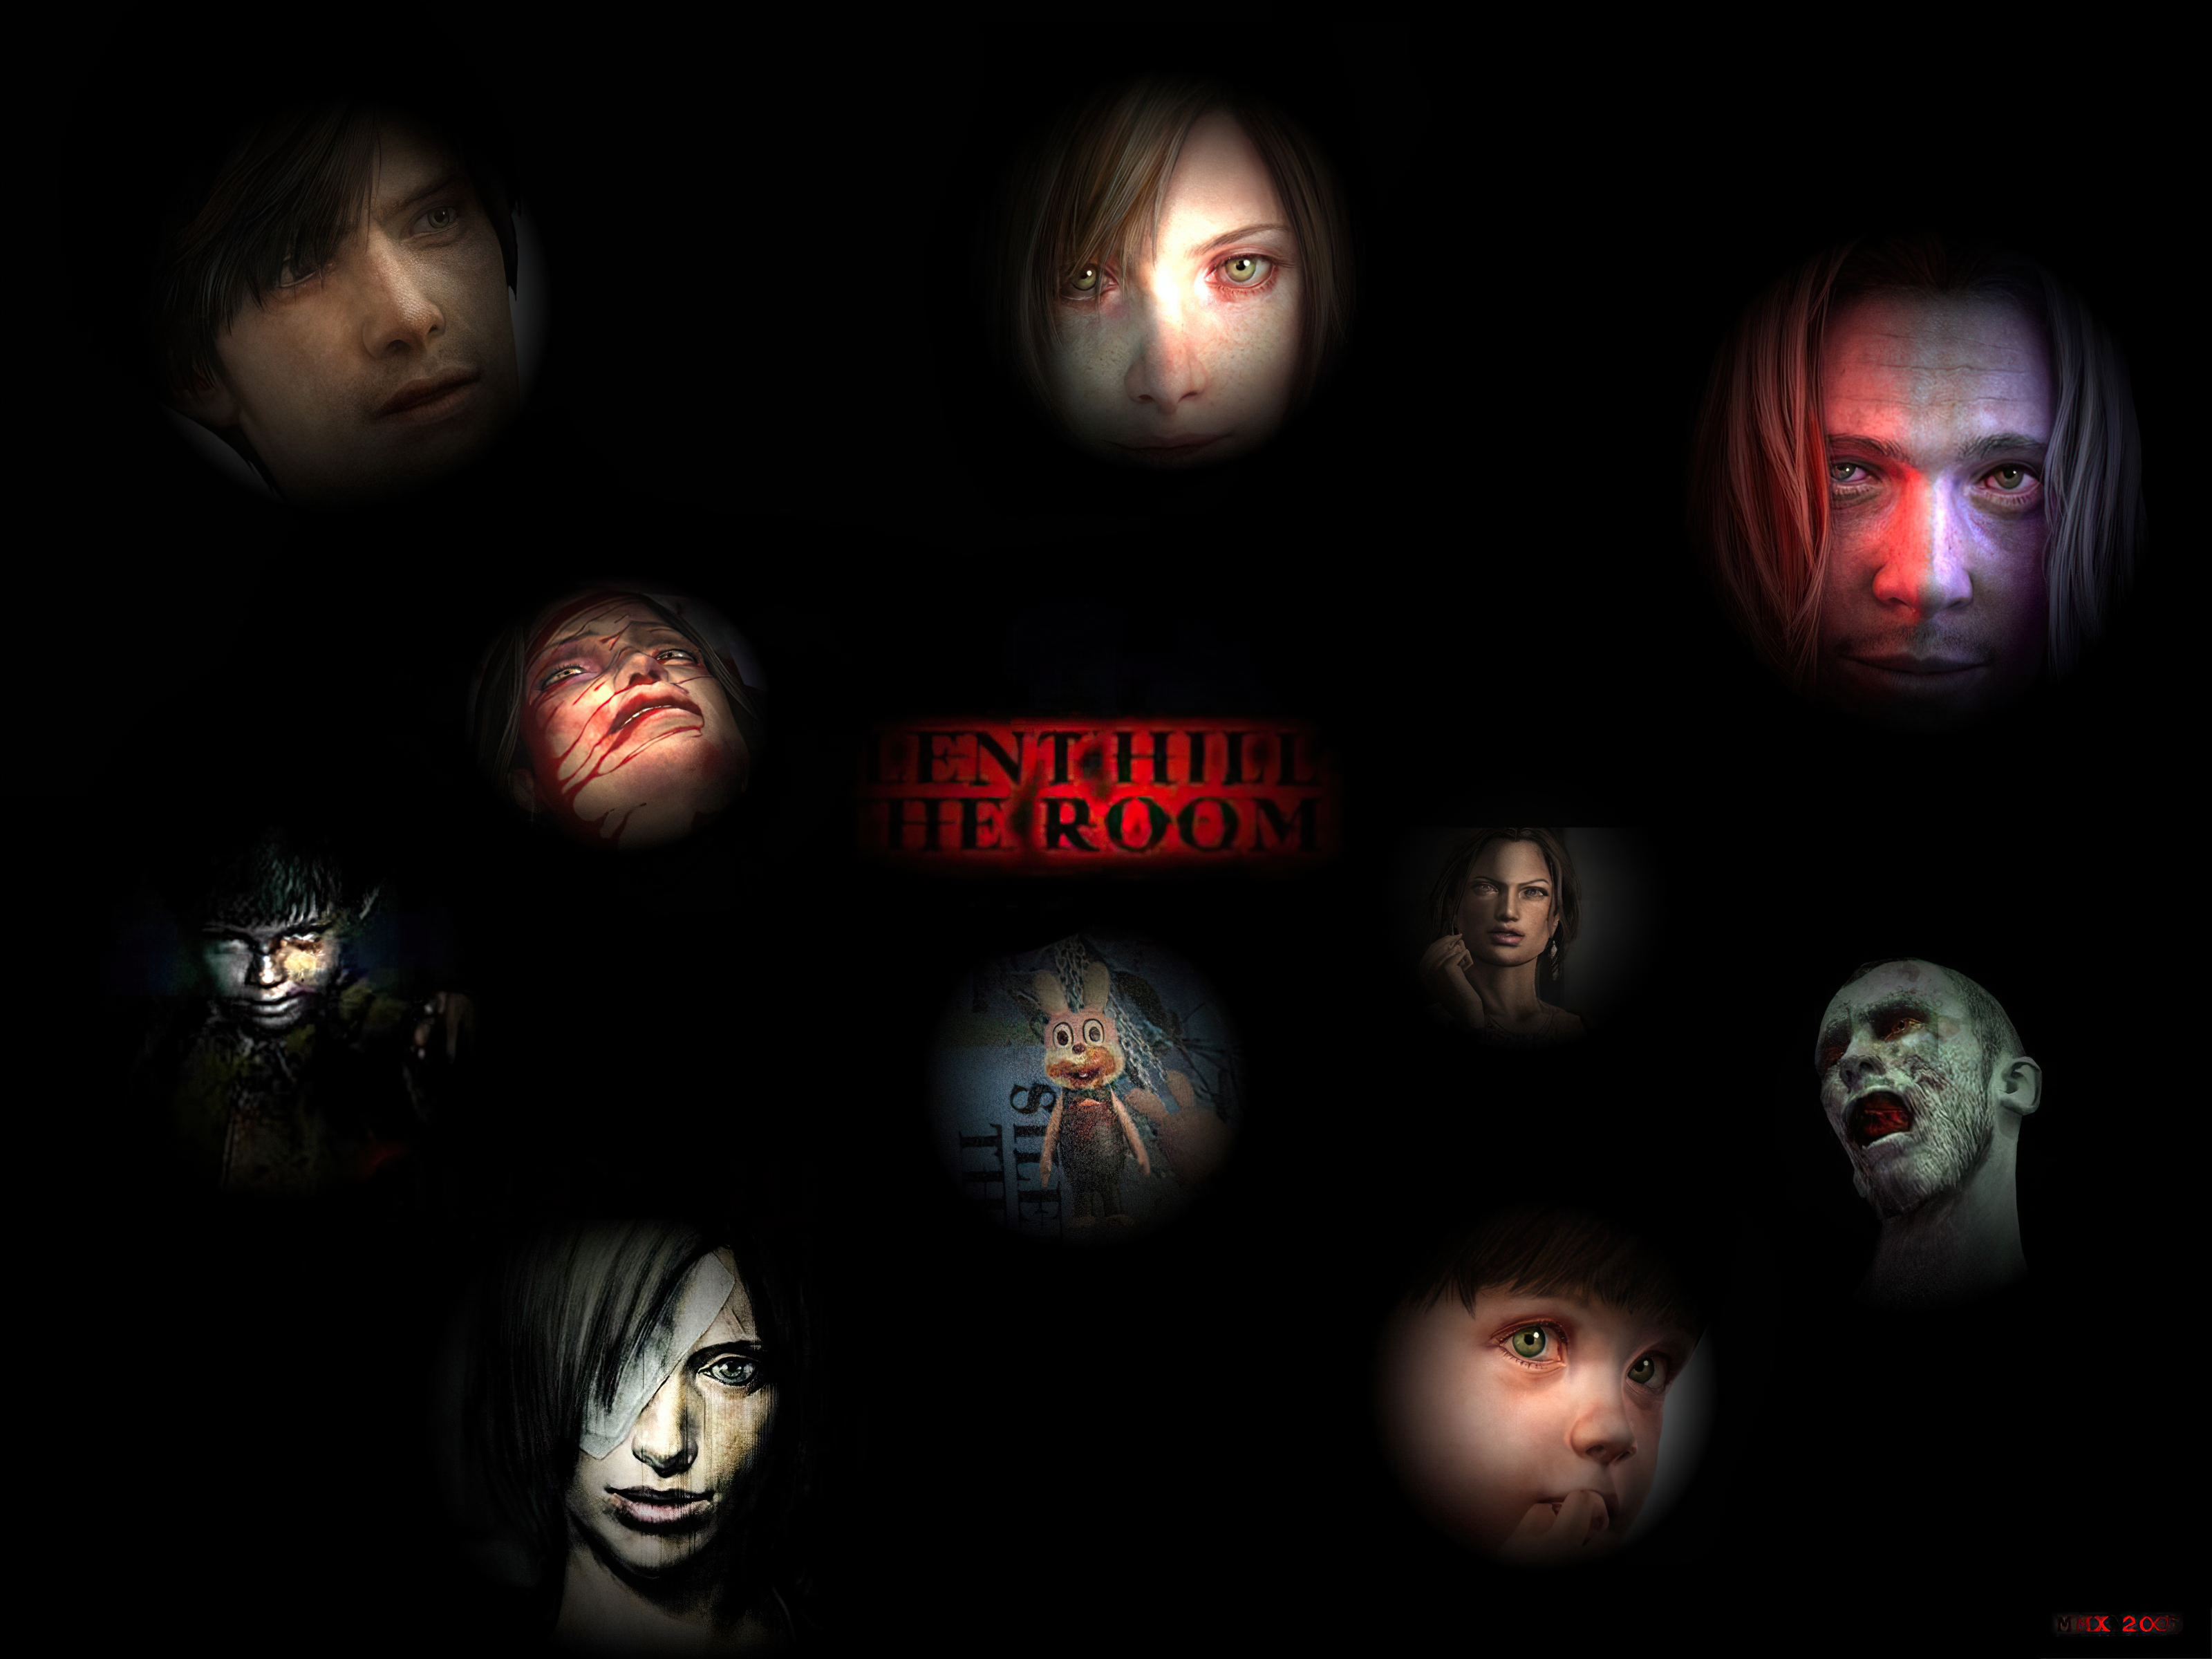 Los mejores fondos de pantalla de Silent Hill 4: The Room para la pantalla del teléfono